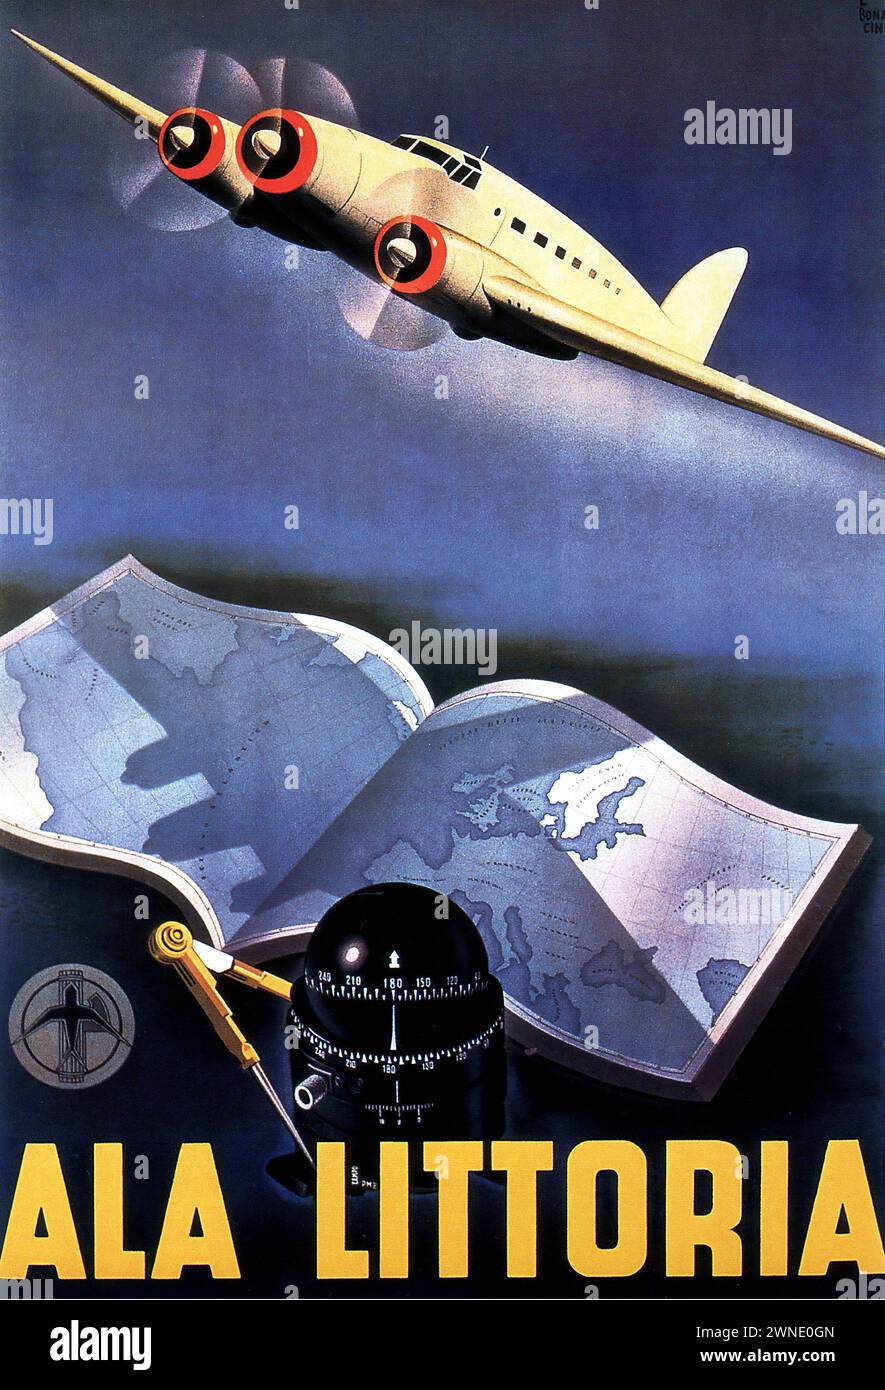 'ALA LITTORIA' ['ALA LITTORIA'] Vintage Italian Advertising, 1939. Un avion monte en flèche avec un globe et des instruments de navigation au premier plan, ce qui implique une portée mondiale. L'image est dans un style art déco, utilisant des couleurs vibrantes et un mouvement dynamique pour suggérer vitesse et modernité. Banque D'Images